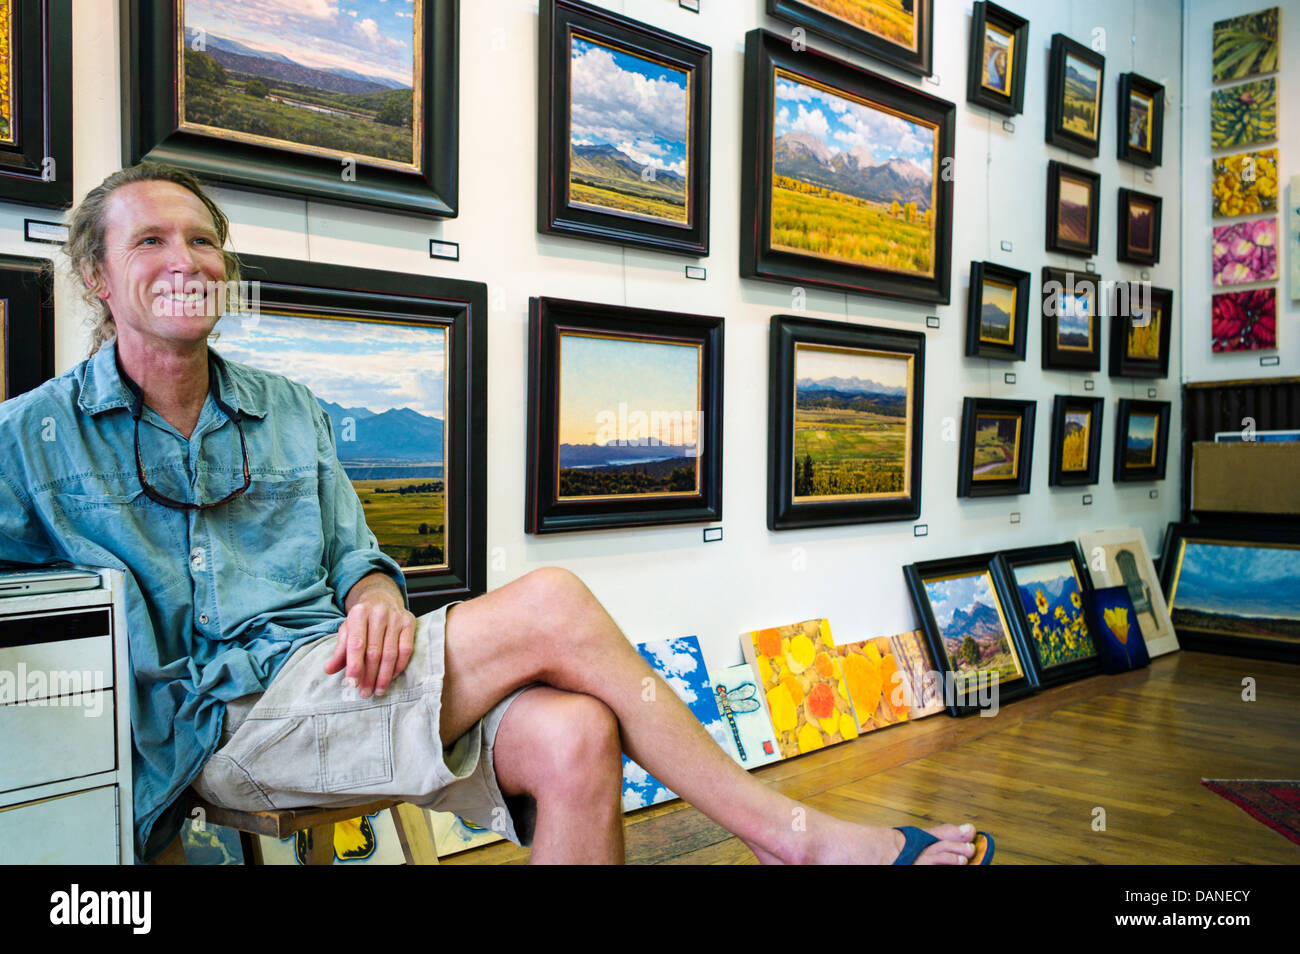 Smalzel Smalzel, Stephen artiste - Mayfield gallery au cours de l'assemblée annuelle du festival ArtWalk, Salida, Colorado, USA Banque D'Images